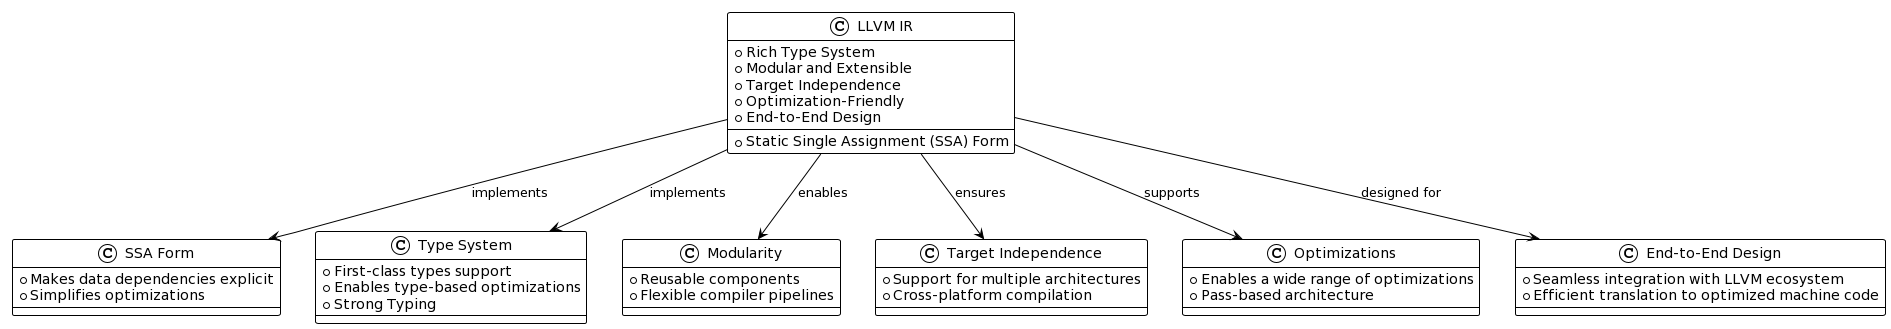 LLVM design